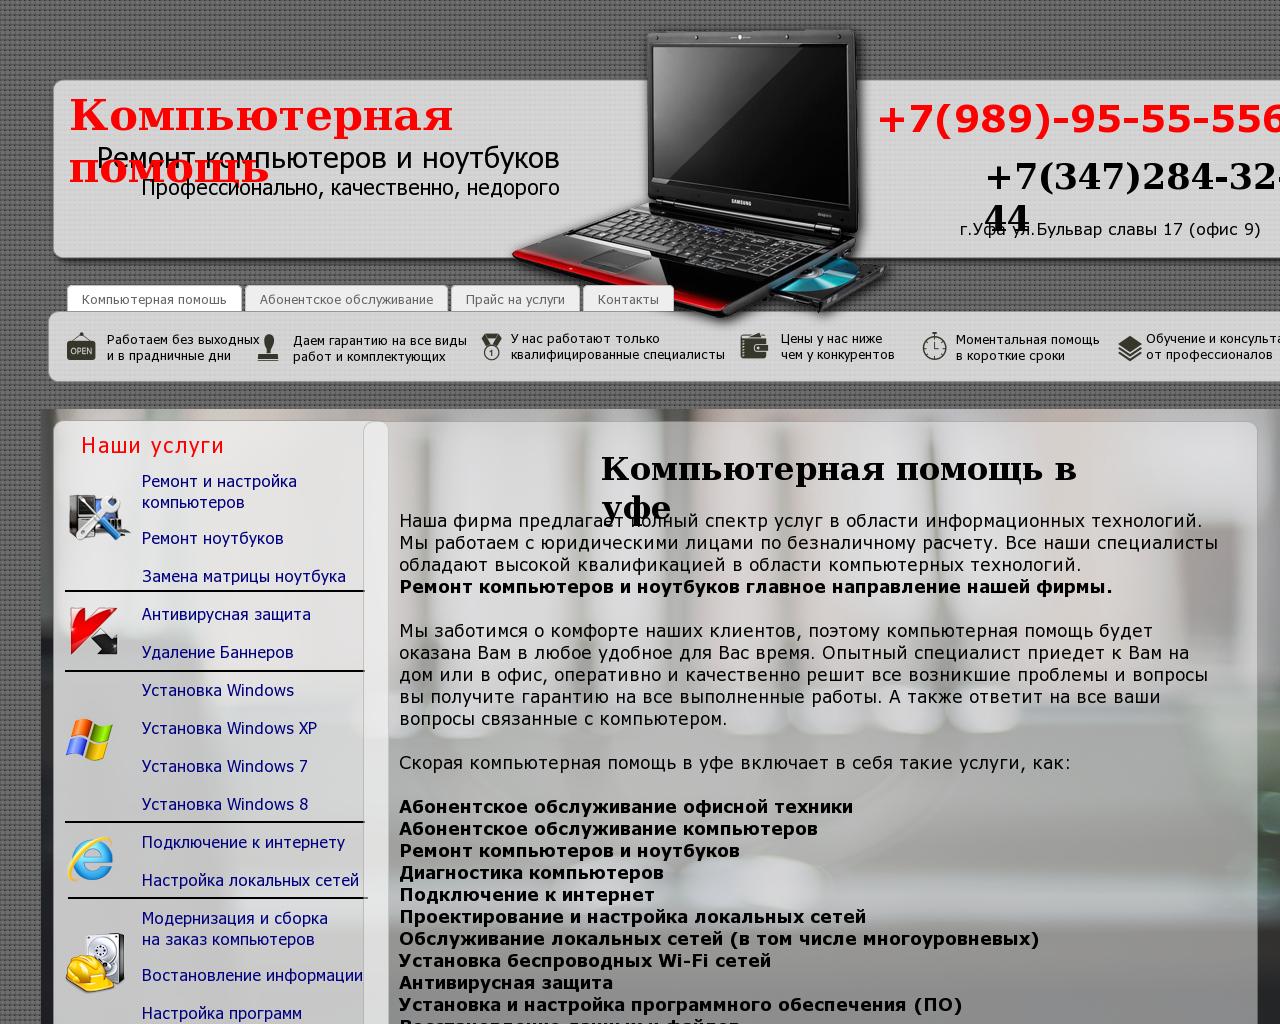 Изображение сайта helppk.ru в разрешении 1280x1024